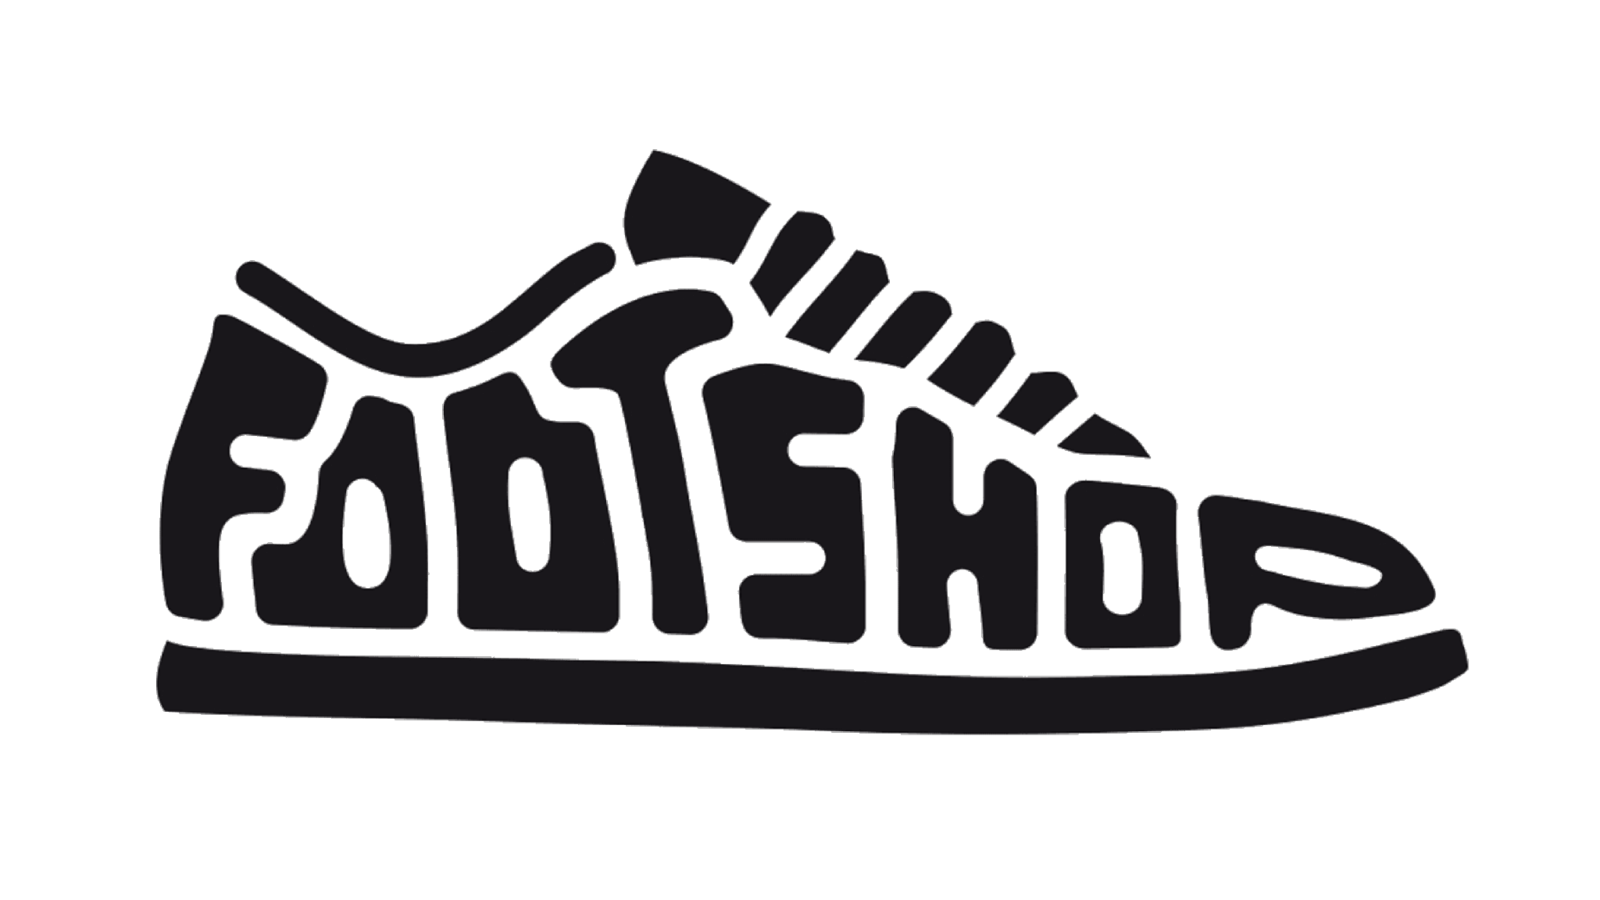 Sneakers logo. Эмблема кроссовок. Кроссовки логотип. Логотип магазина кроссовок. Логотип уличной одежды.